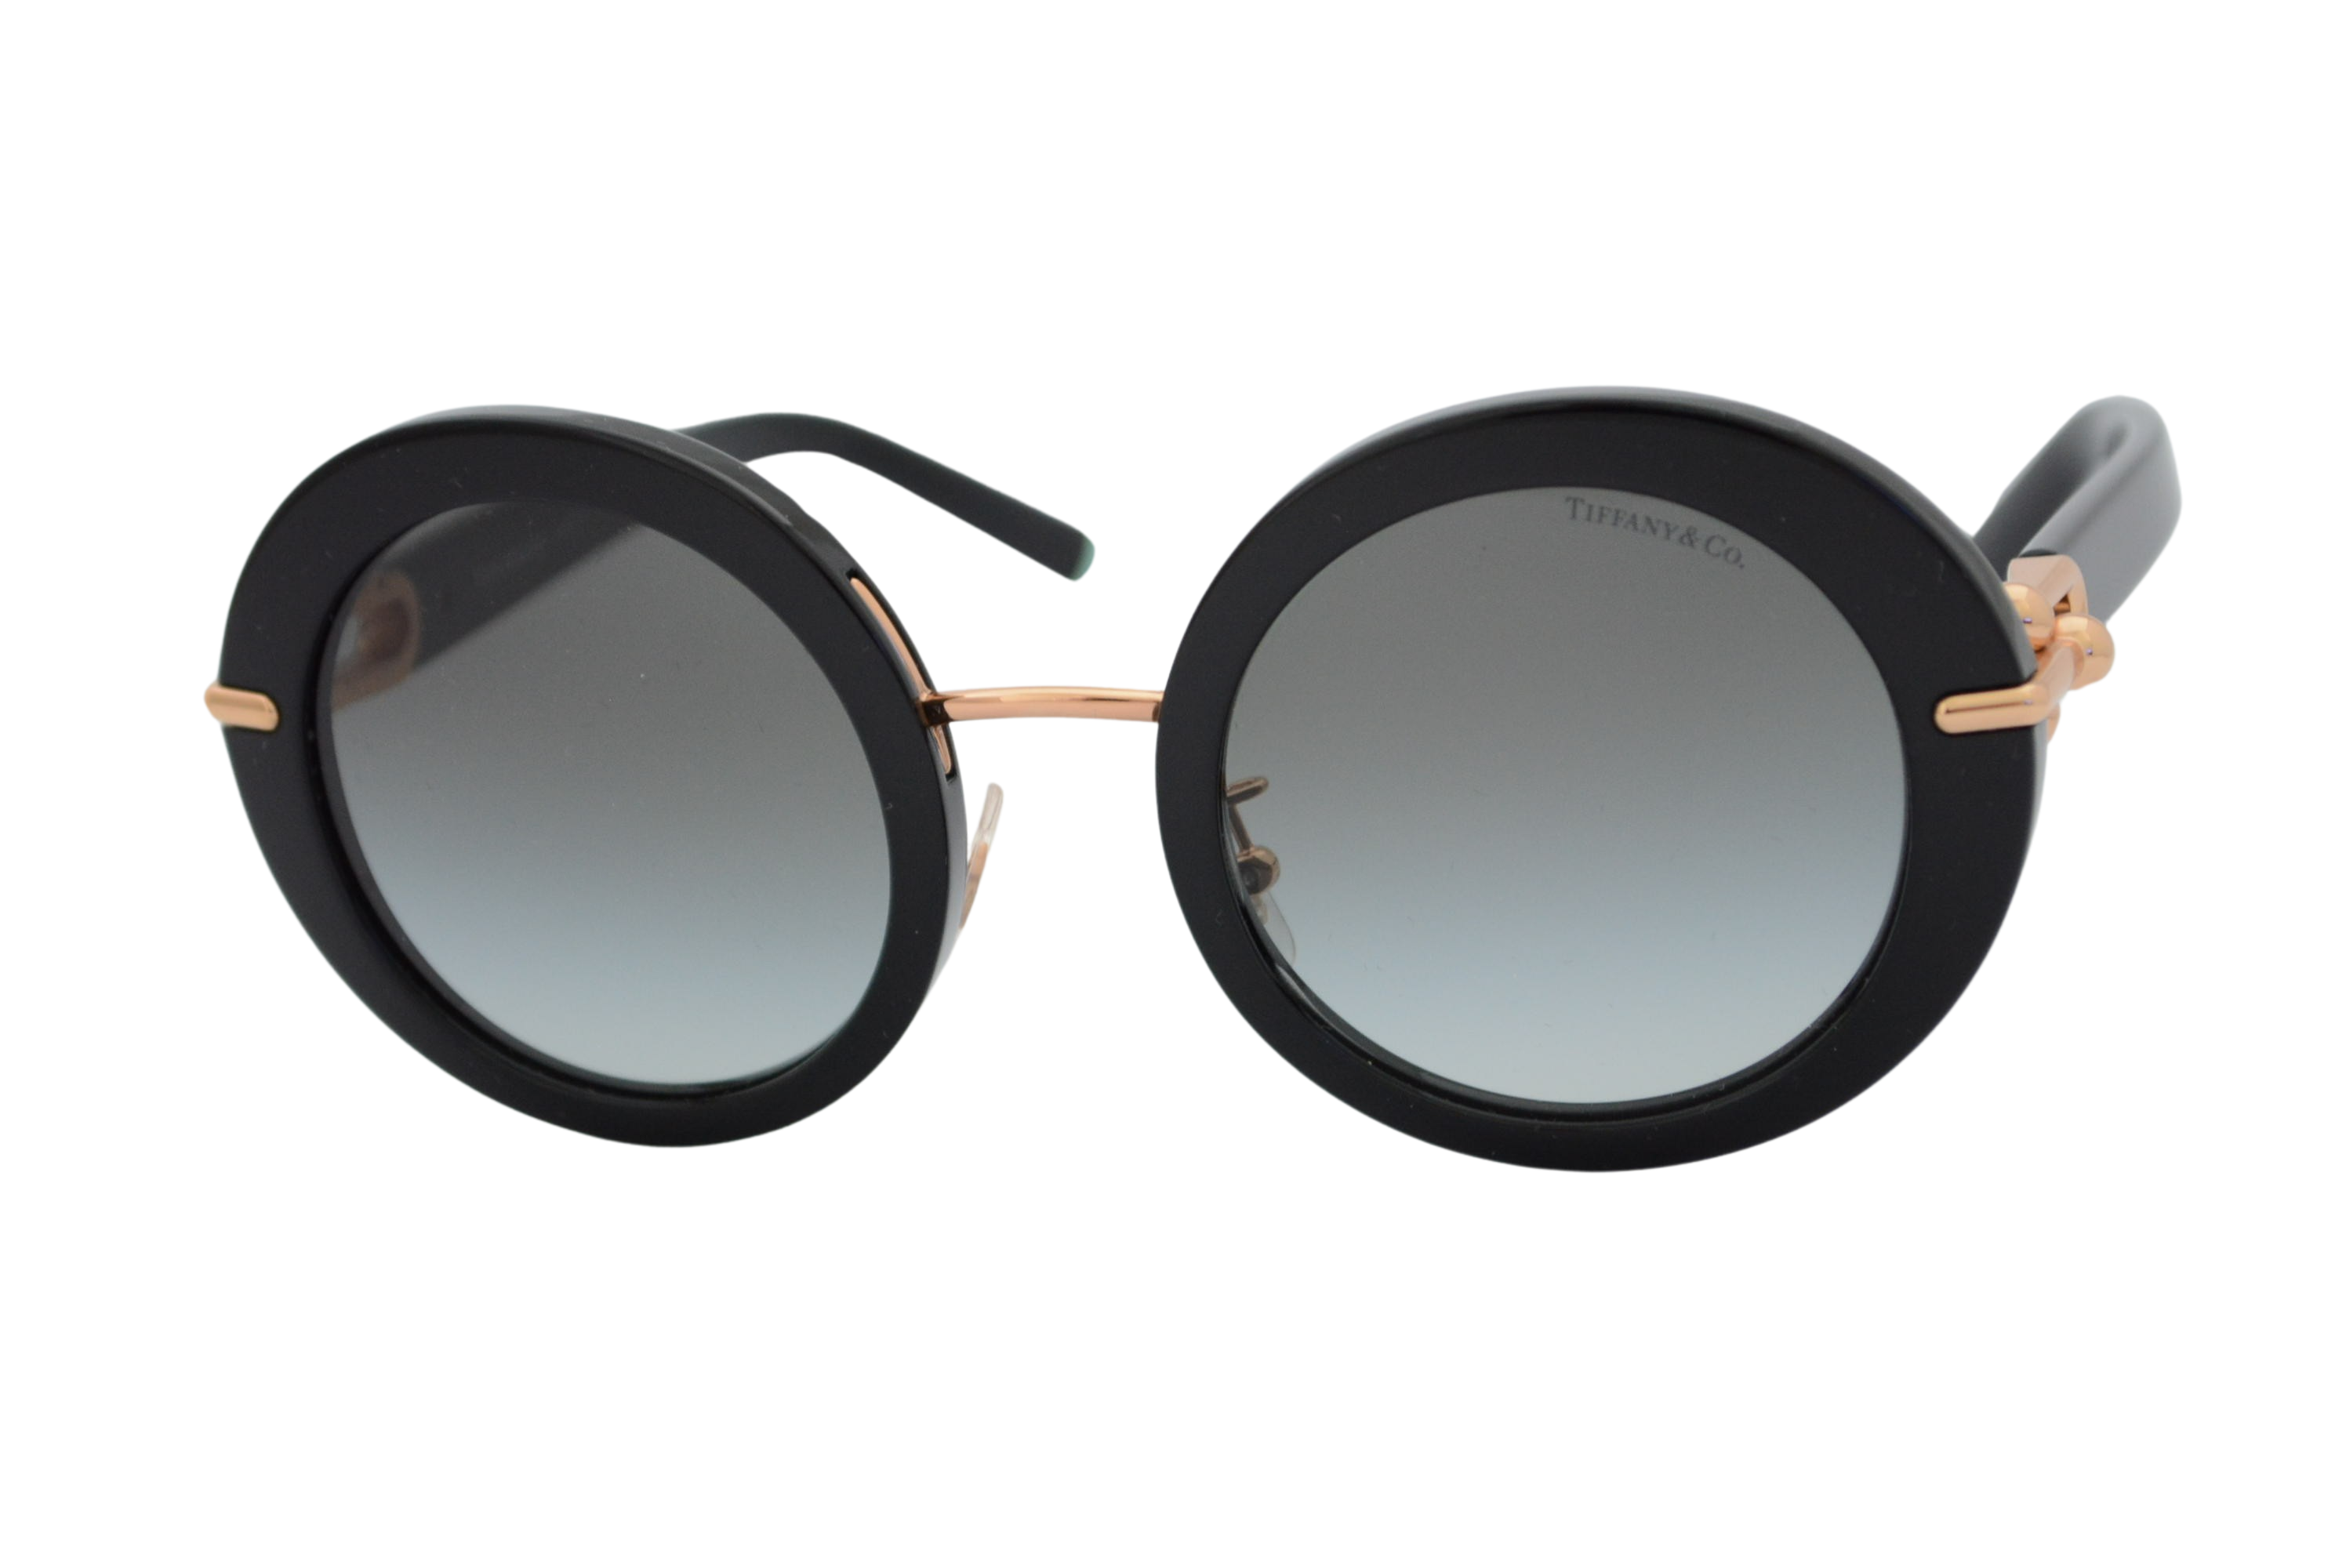 óculos de sol Tiffany mod TF4201 8001/3c